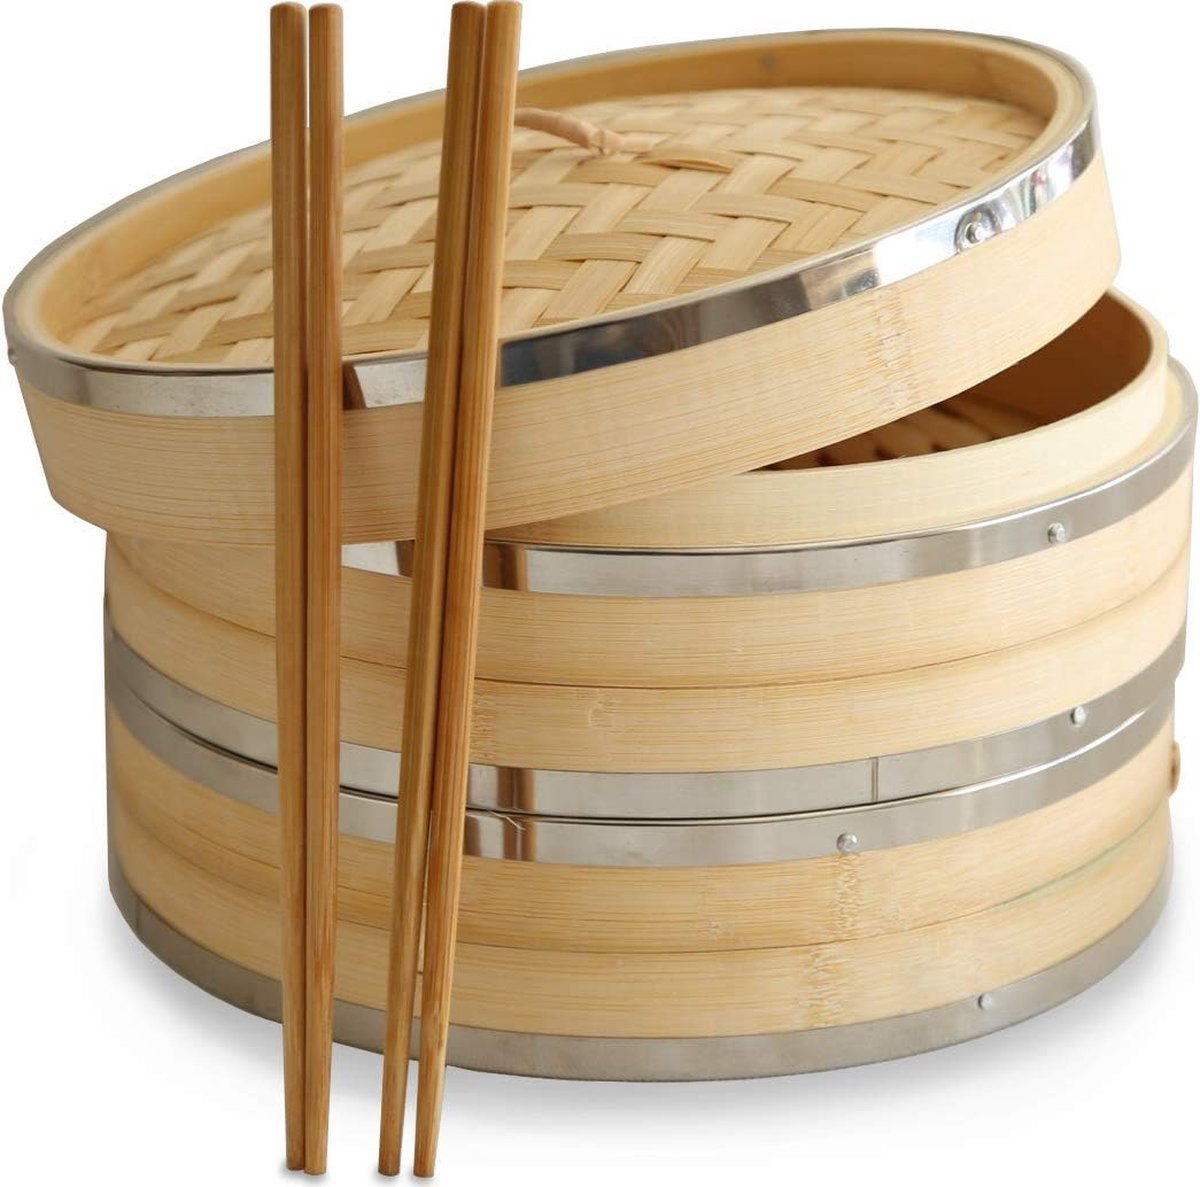 Premium stomer van 25 4 cm gemaakt van biologisch bamboe uit . 2 grote bamboestoomboten. Versterkt met roestvrij staal hoge kwaliteit en duurzaam. Ideaal voor dim sum groenten vlees en vis. Inclusief eetstokjes